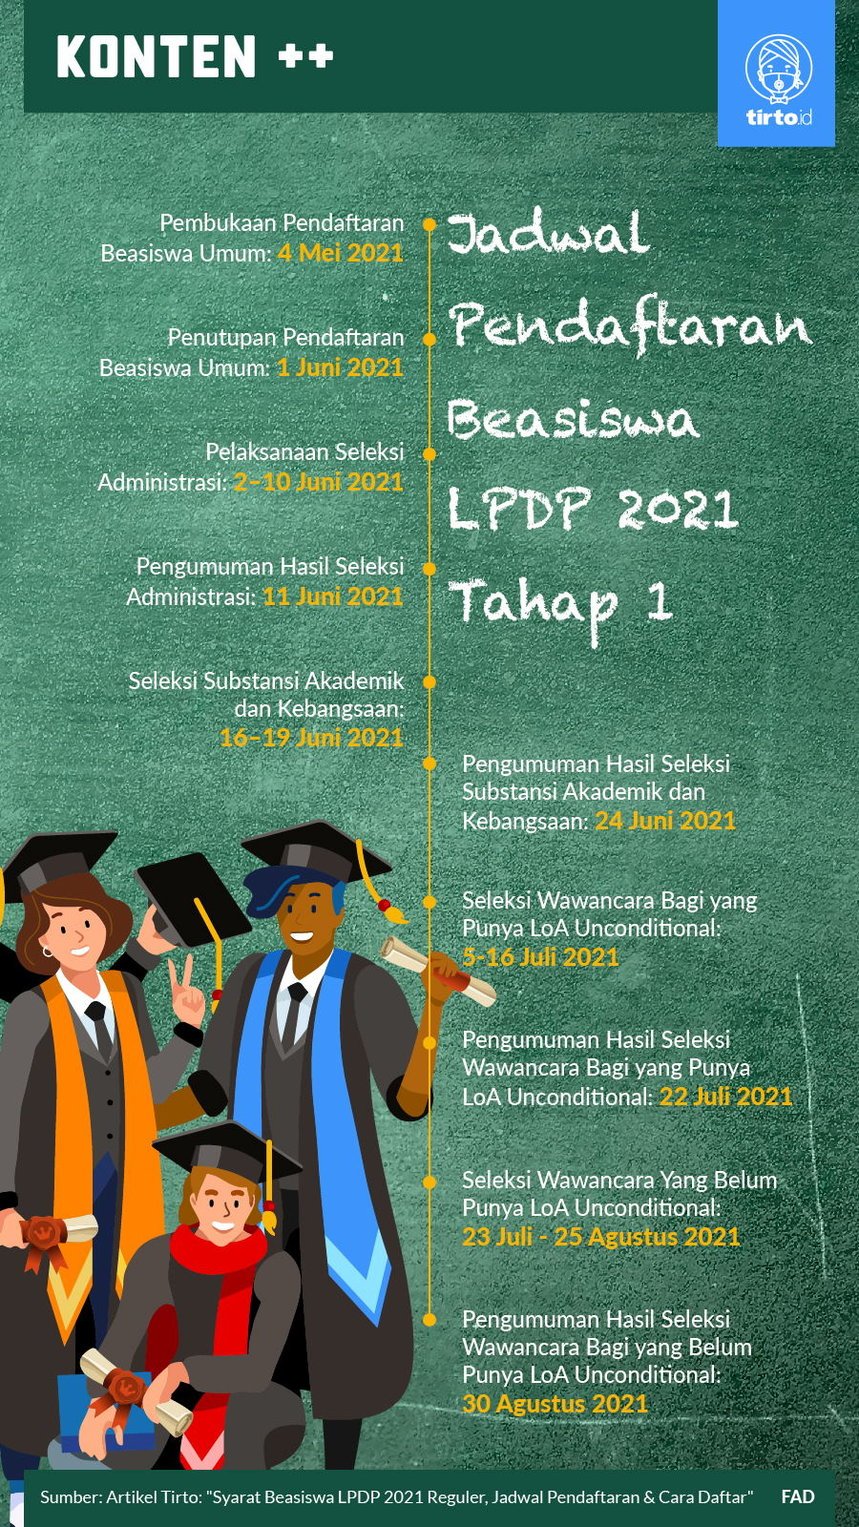 Syarat Beasiswa LPDP 2021 Reguler, Jadwal Pendaftaran & Cara Daftar